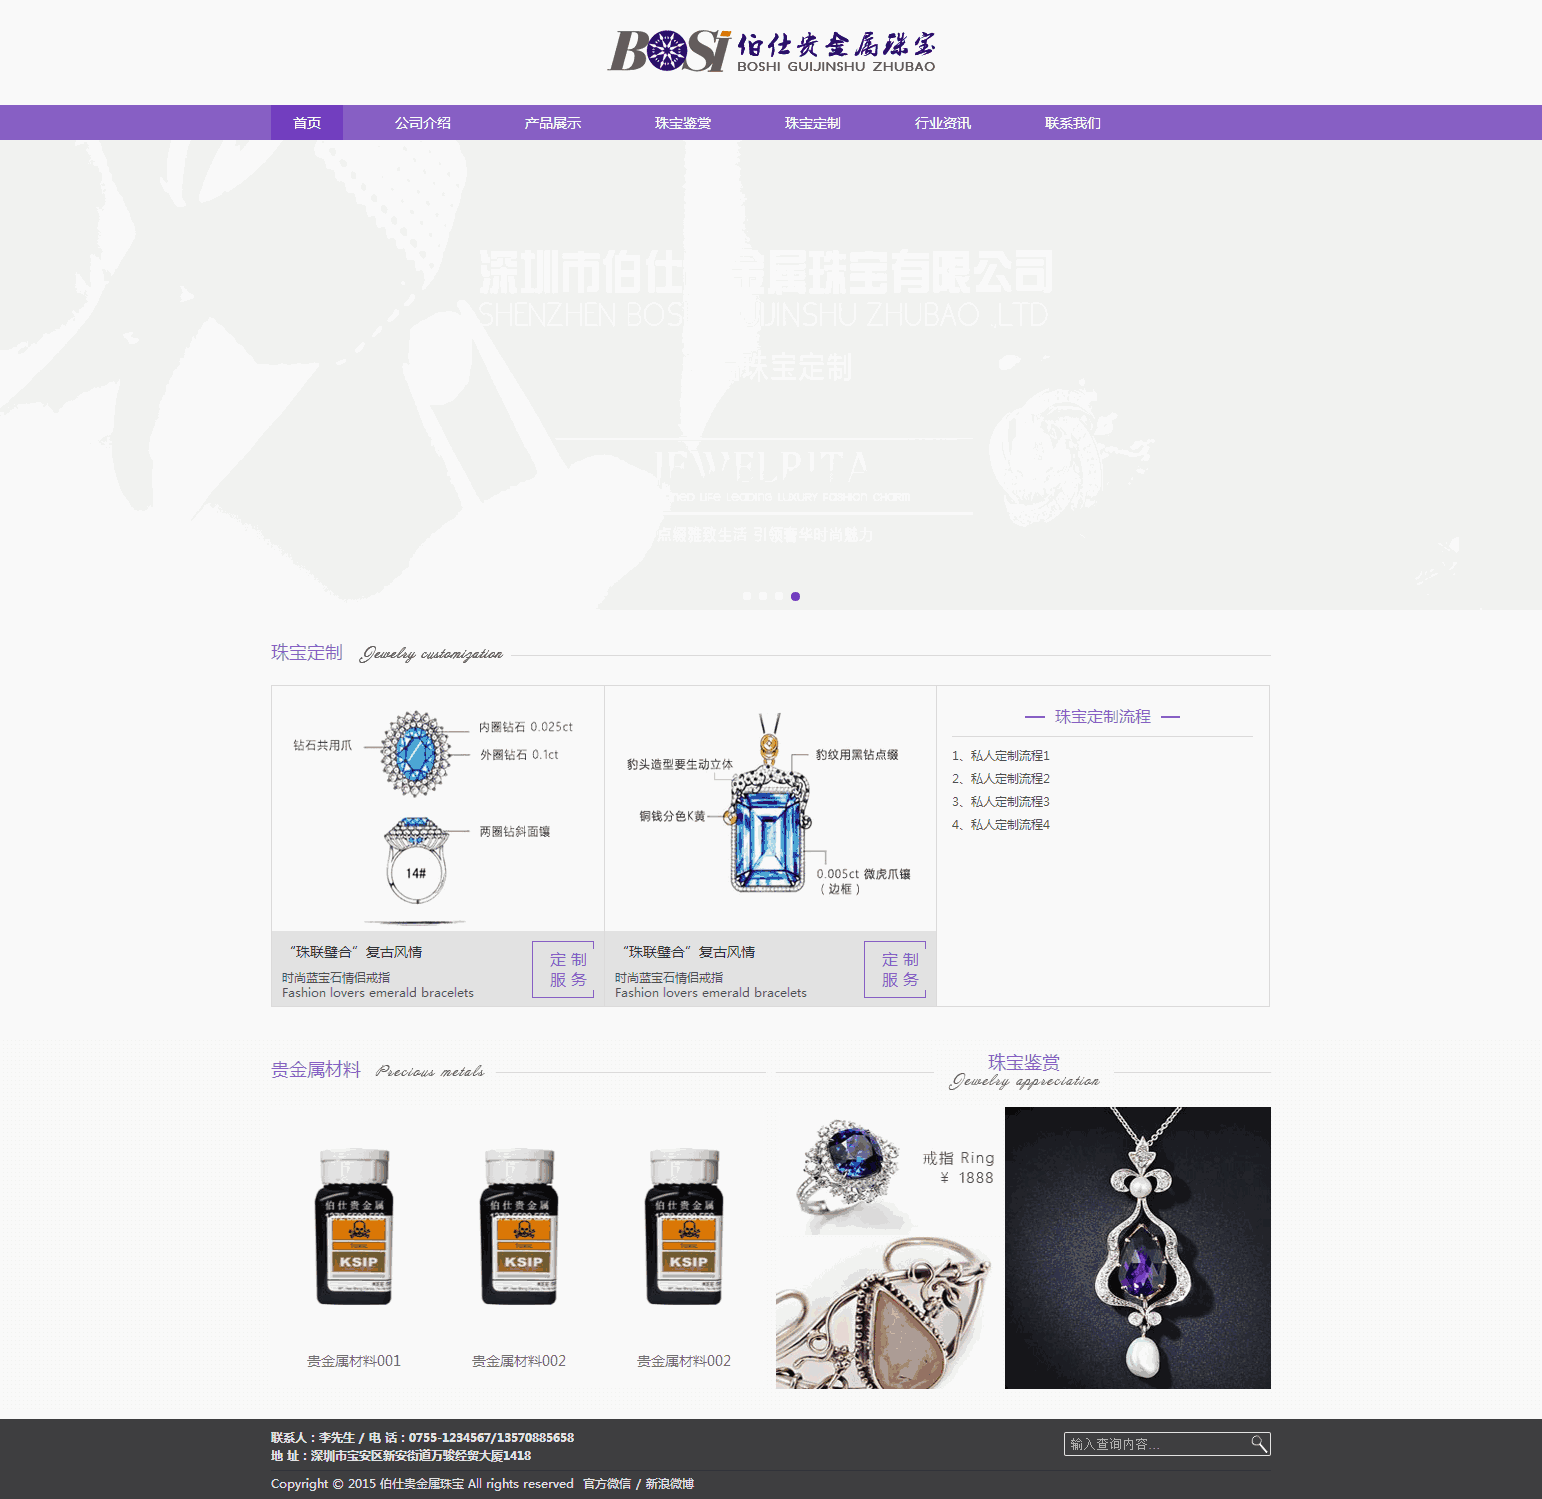 紫色宽屏伯仕贵金属珠宝响应式网站WordPress模板演示图